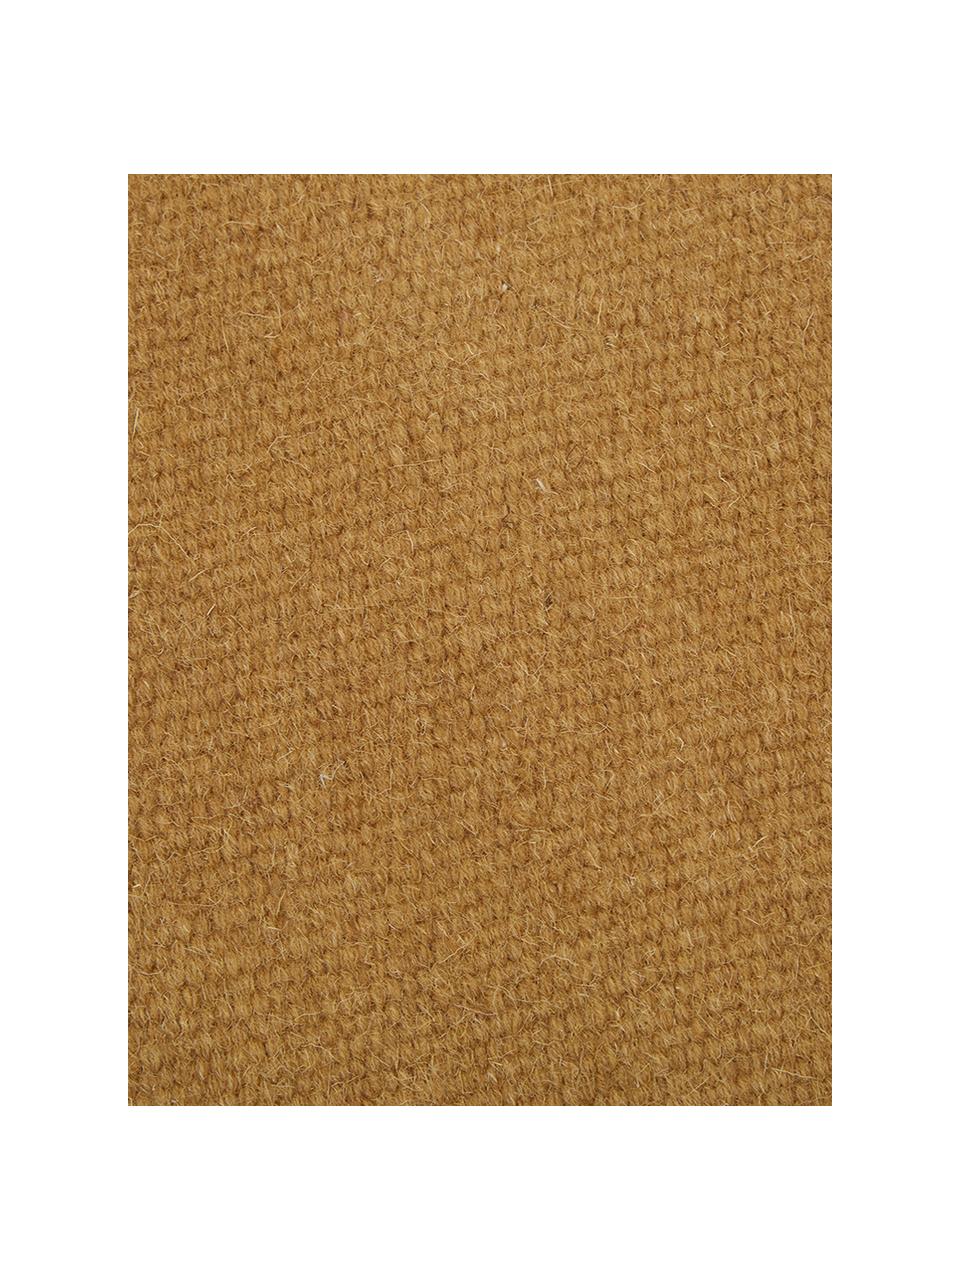 Ručně tkaný vlněný kilimový koberec s třásněmi Rainbow, Okrová žlutá, Š 200 cm, D 300 cm (velikost L)